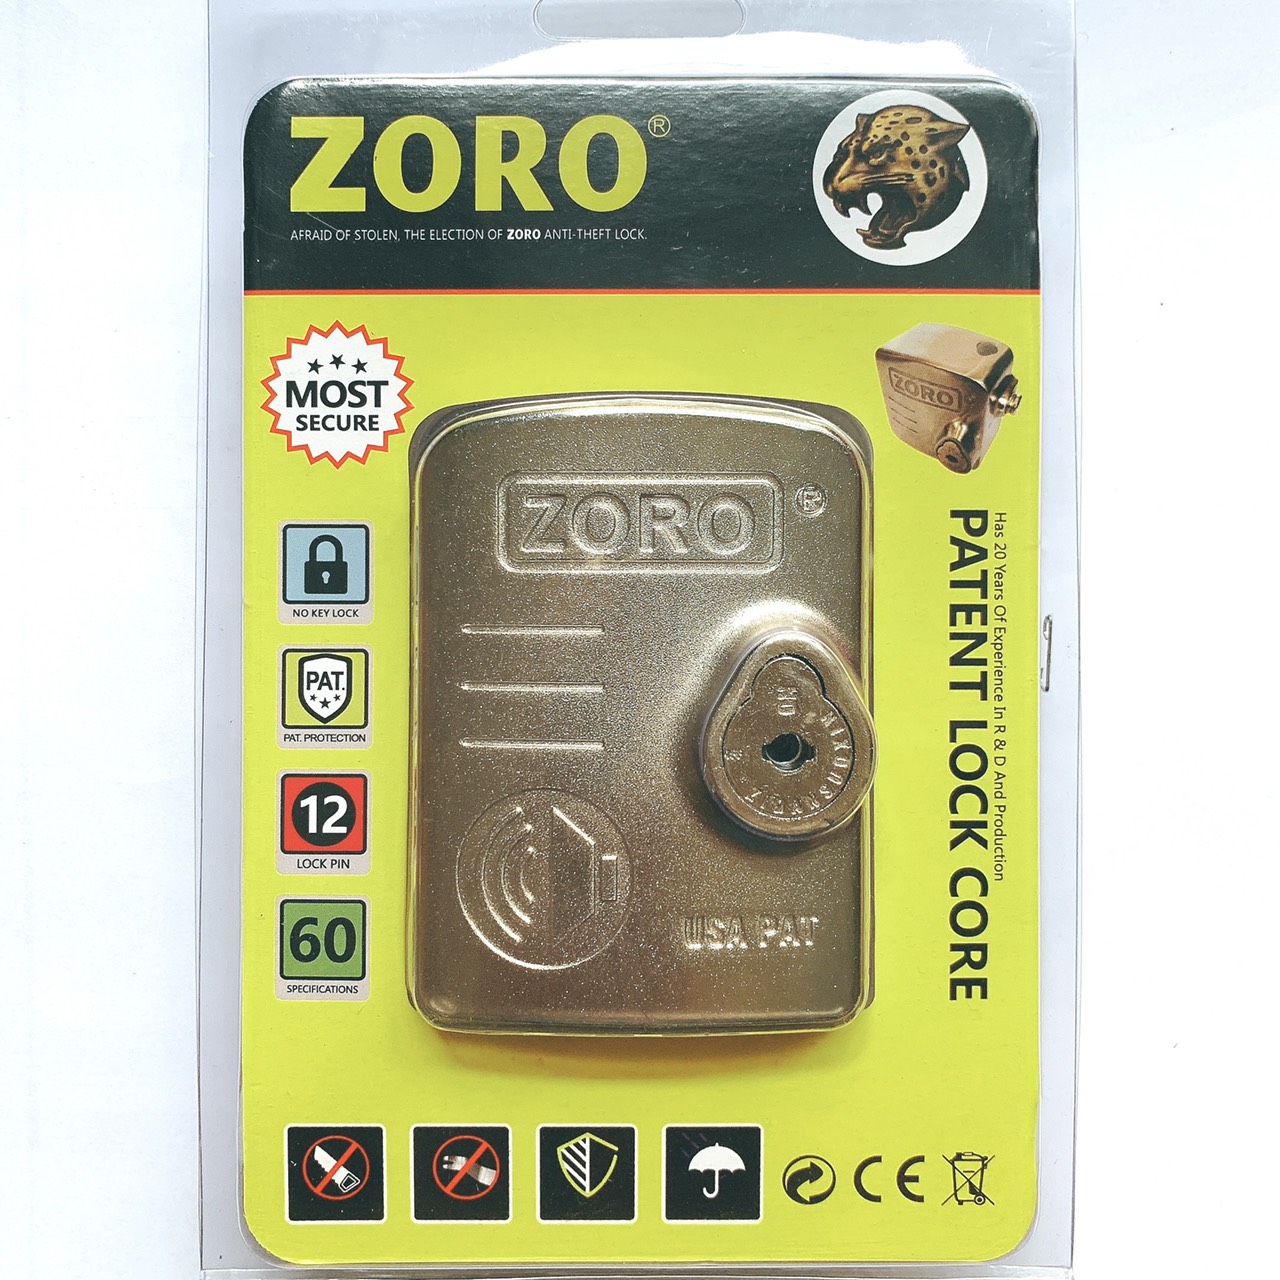 Ổ khóa chụp bát cửa báo động chống trộm ZORO thông minh - màu trắng bạc - khóa chụp chống cắt toàn diện, chống cắt khoen cửa - hàng chính hãng